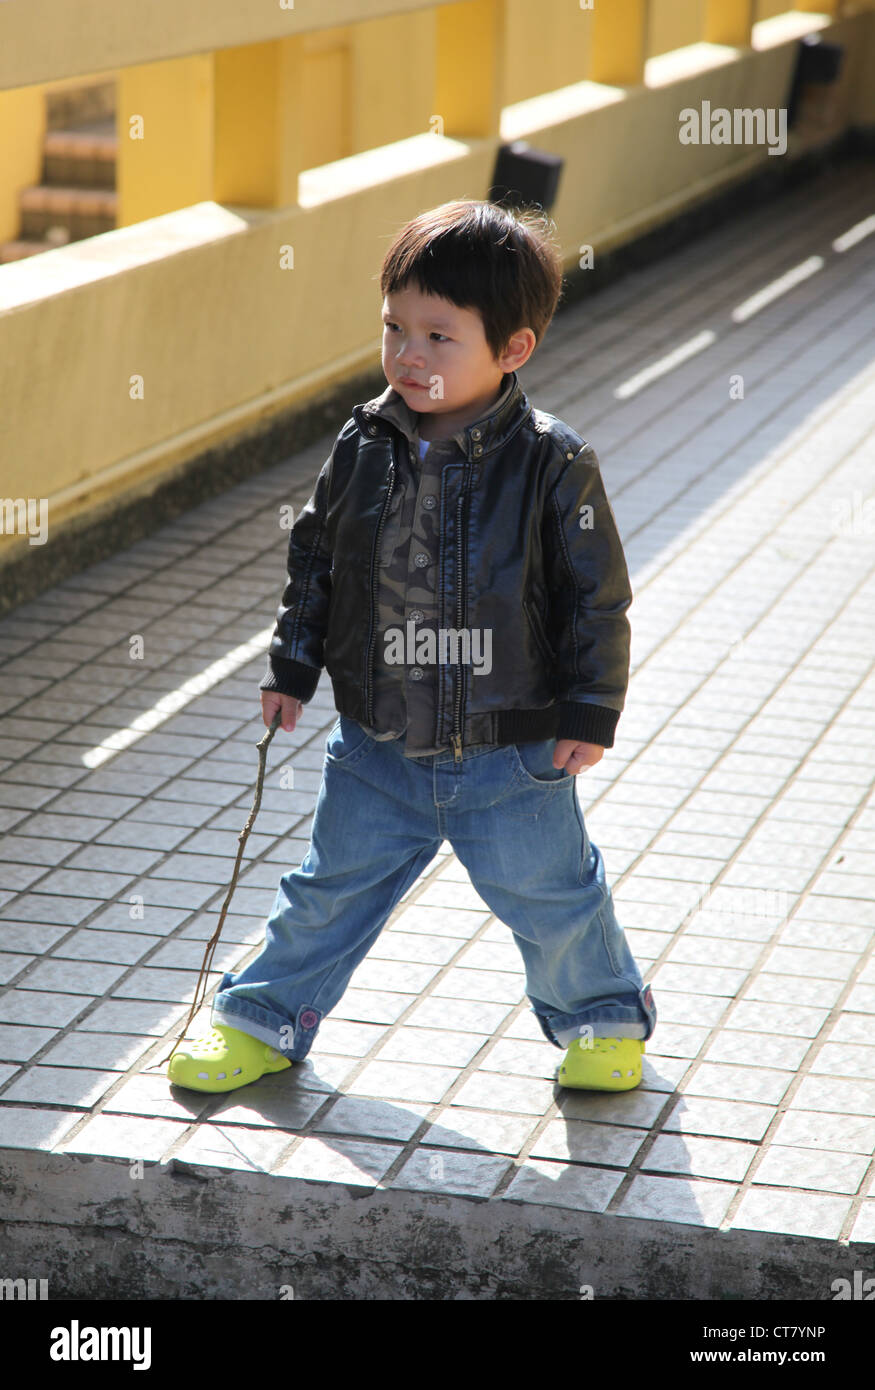 C'est une photo d'un petit garçon chinois qui agissent comme un agent de sécurité. Il est titulaire d'un bâton de bois comme arme et bloquer le chemin Banque D'Images